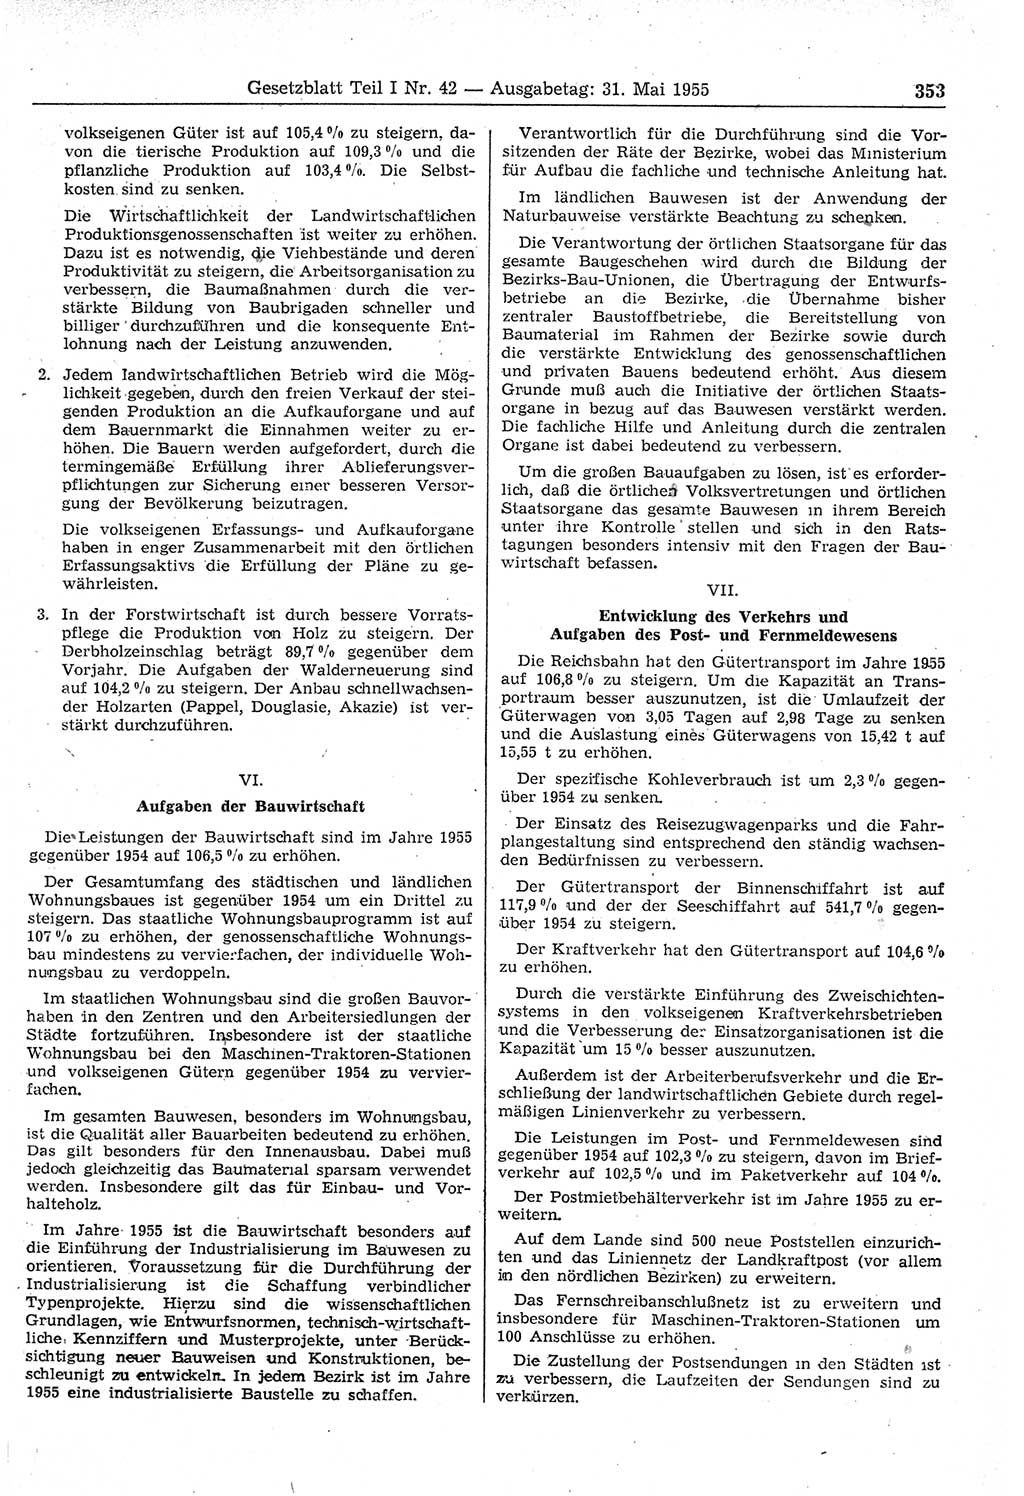 Gesetzblatt (GBl.) der Deutschen Demokratischen Republik (DDR) Teil Ⅰ 1955, Seite 353 (GBl. DDR Ⅰ 1955, S. 353)